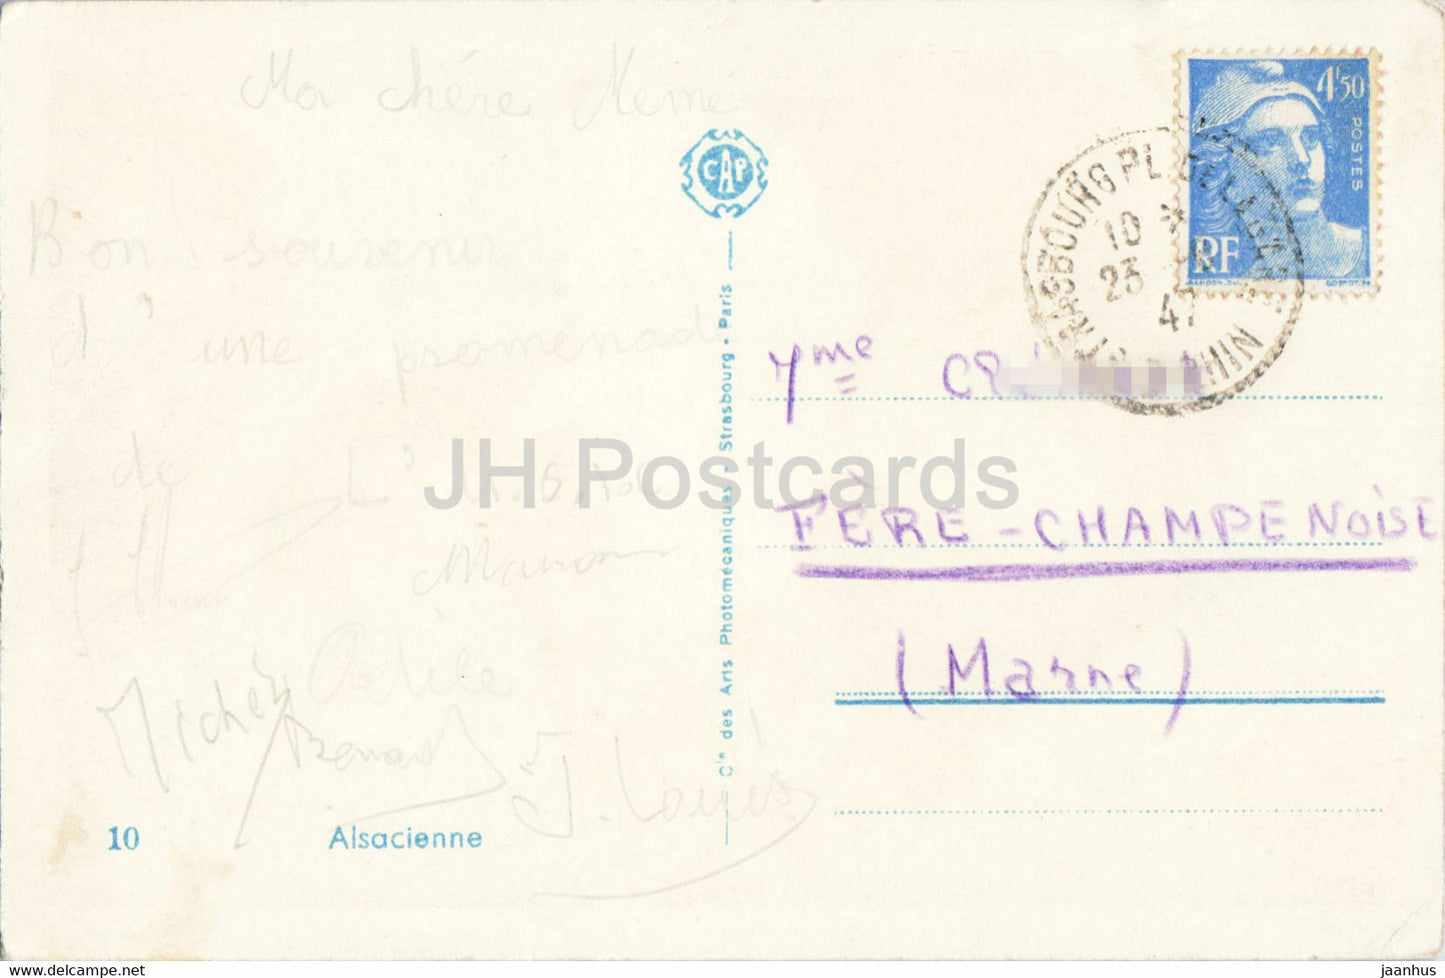 Alsacienne – 10 – Trachten – alte Postkarte – 1947 – Frankreich – gebraucht